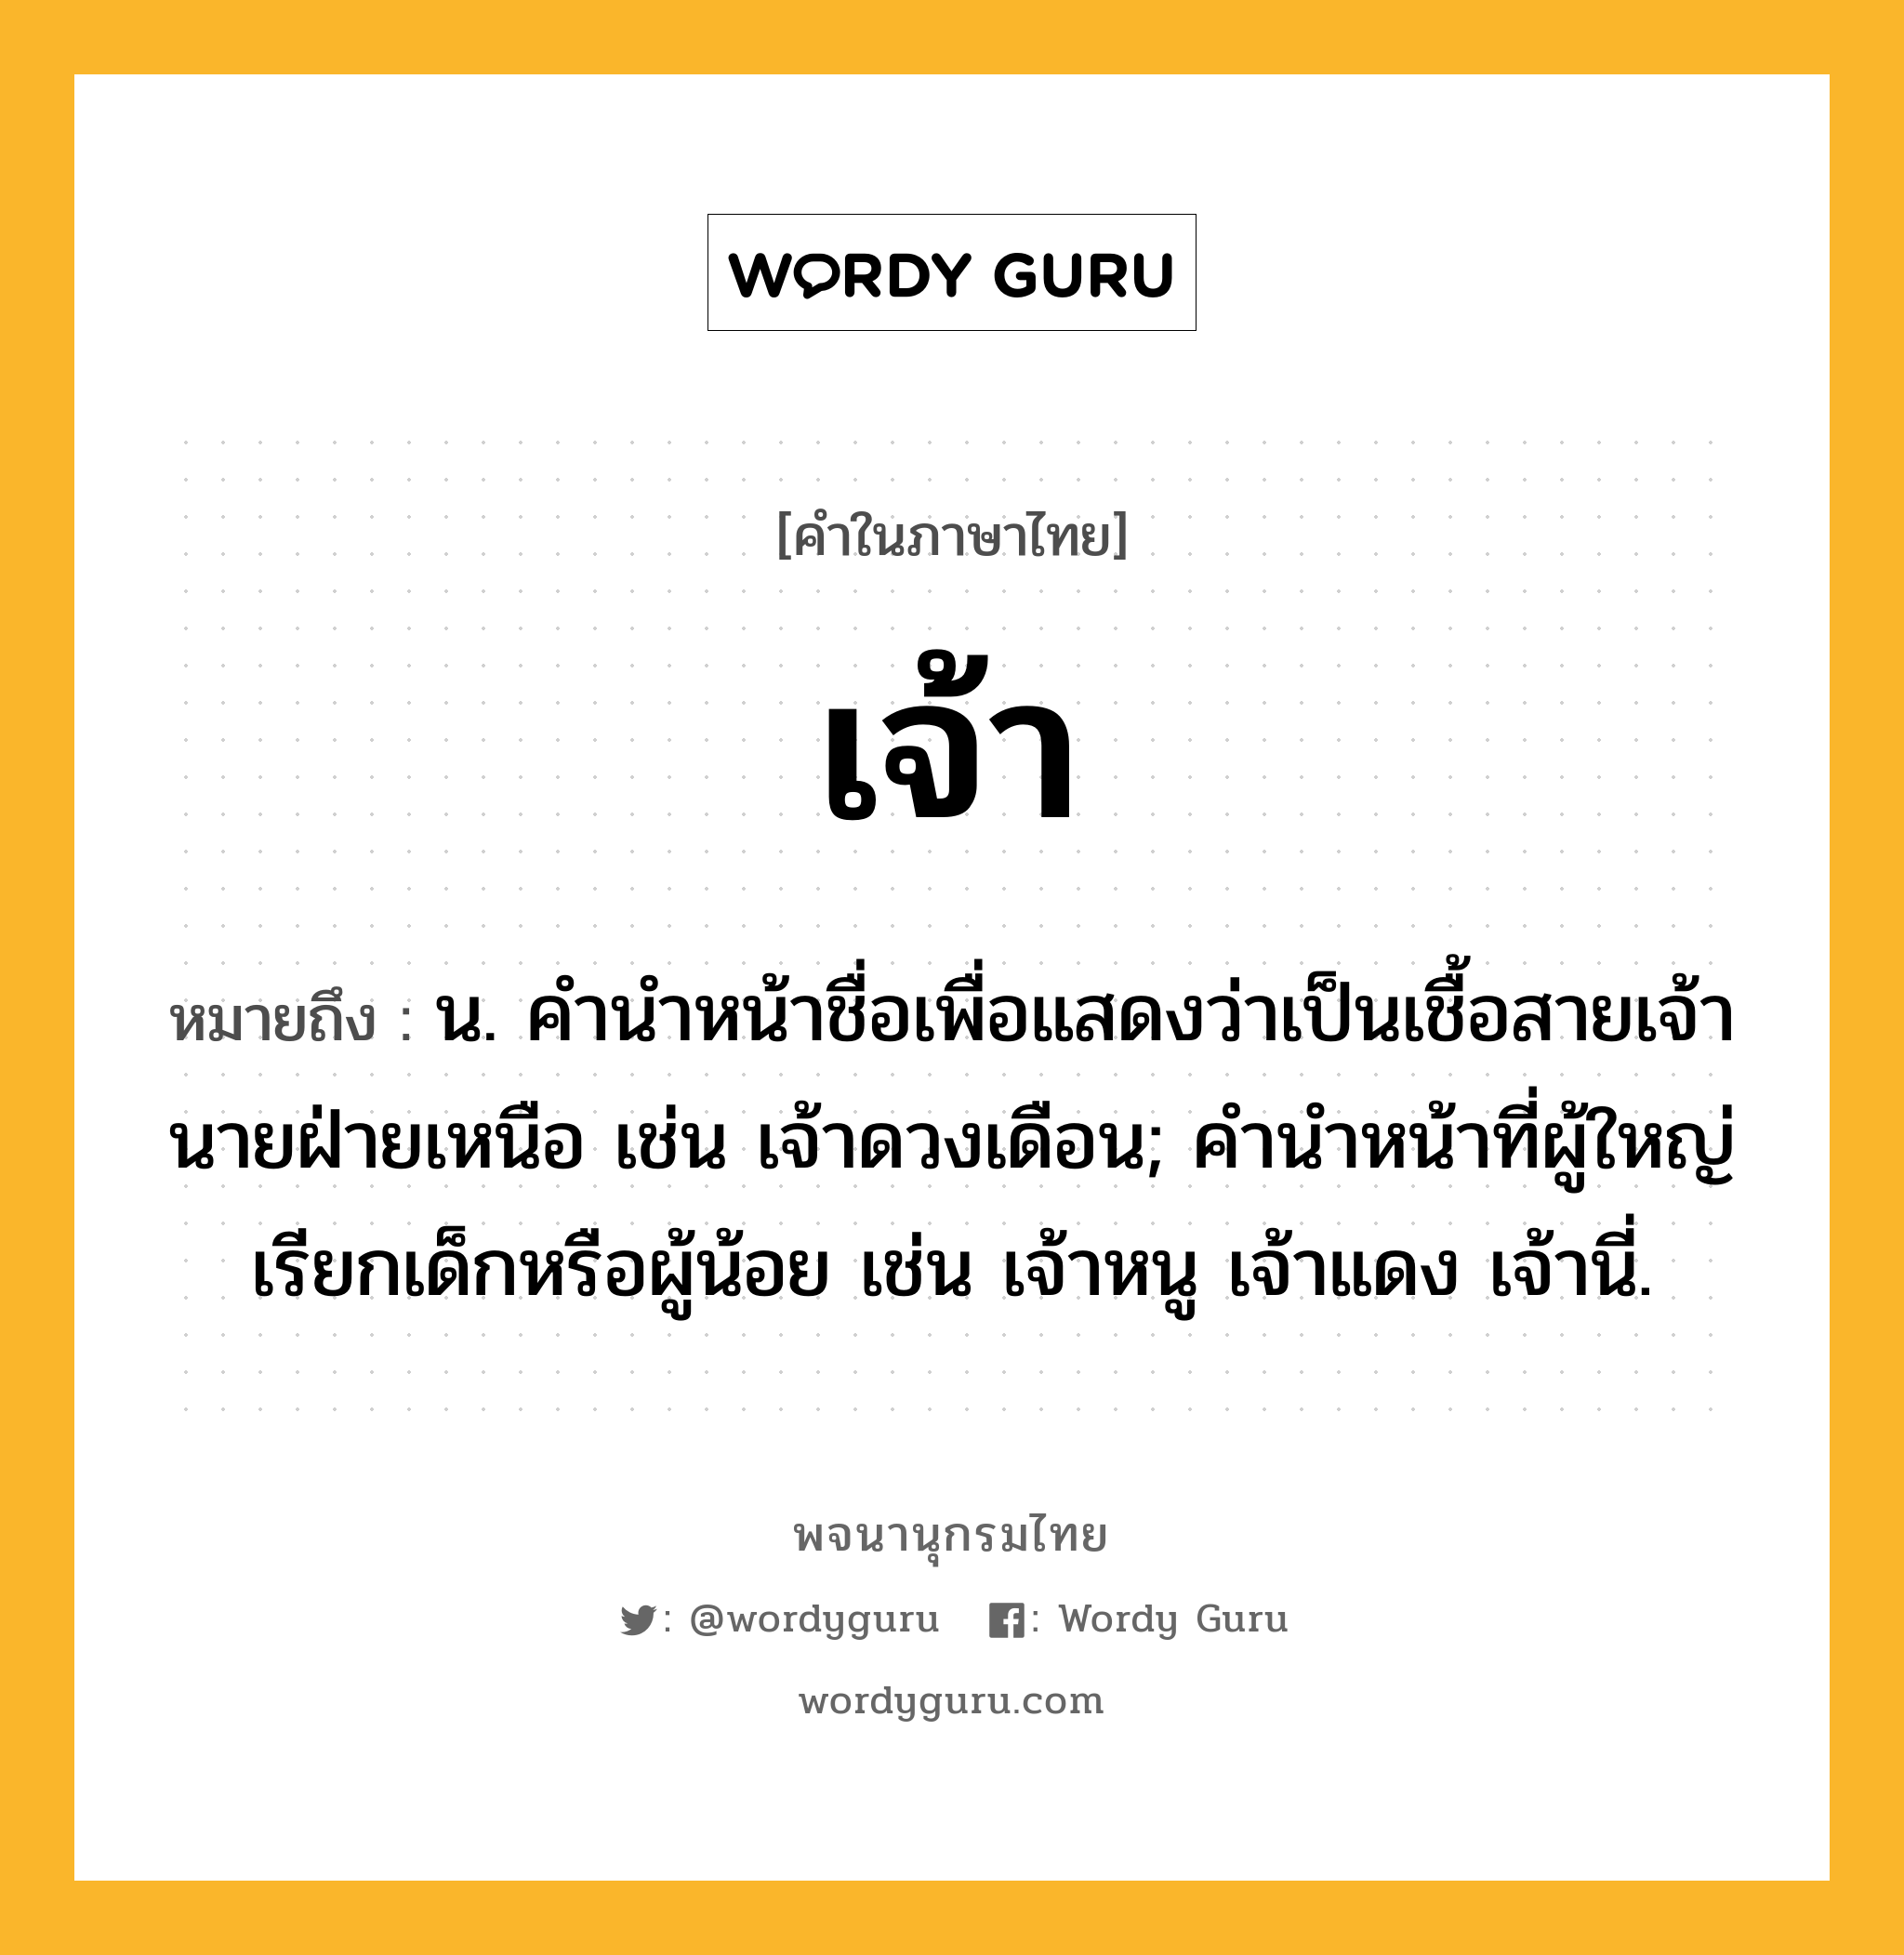 เจ้า หมายถึงอะไร?, คำในภาษาไทย เจ้า หมายถึง น. คำนำหน้าชื่อเพื่อแสดงว่าเป็นเชื้อสายเจ้านายฝ่ายเหนือ เช่น เจ้าดวงเดือน; คํานําหน้าที่ผู้ใหญ่เรียกเด็กหรือผู้น้อย เช่น เจ้าหนู เจ้าแดง เจ้านี่.